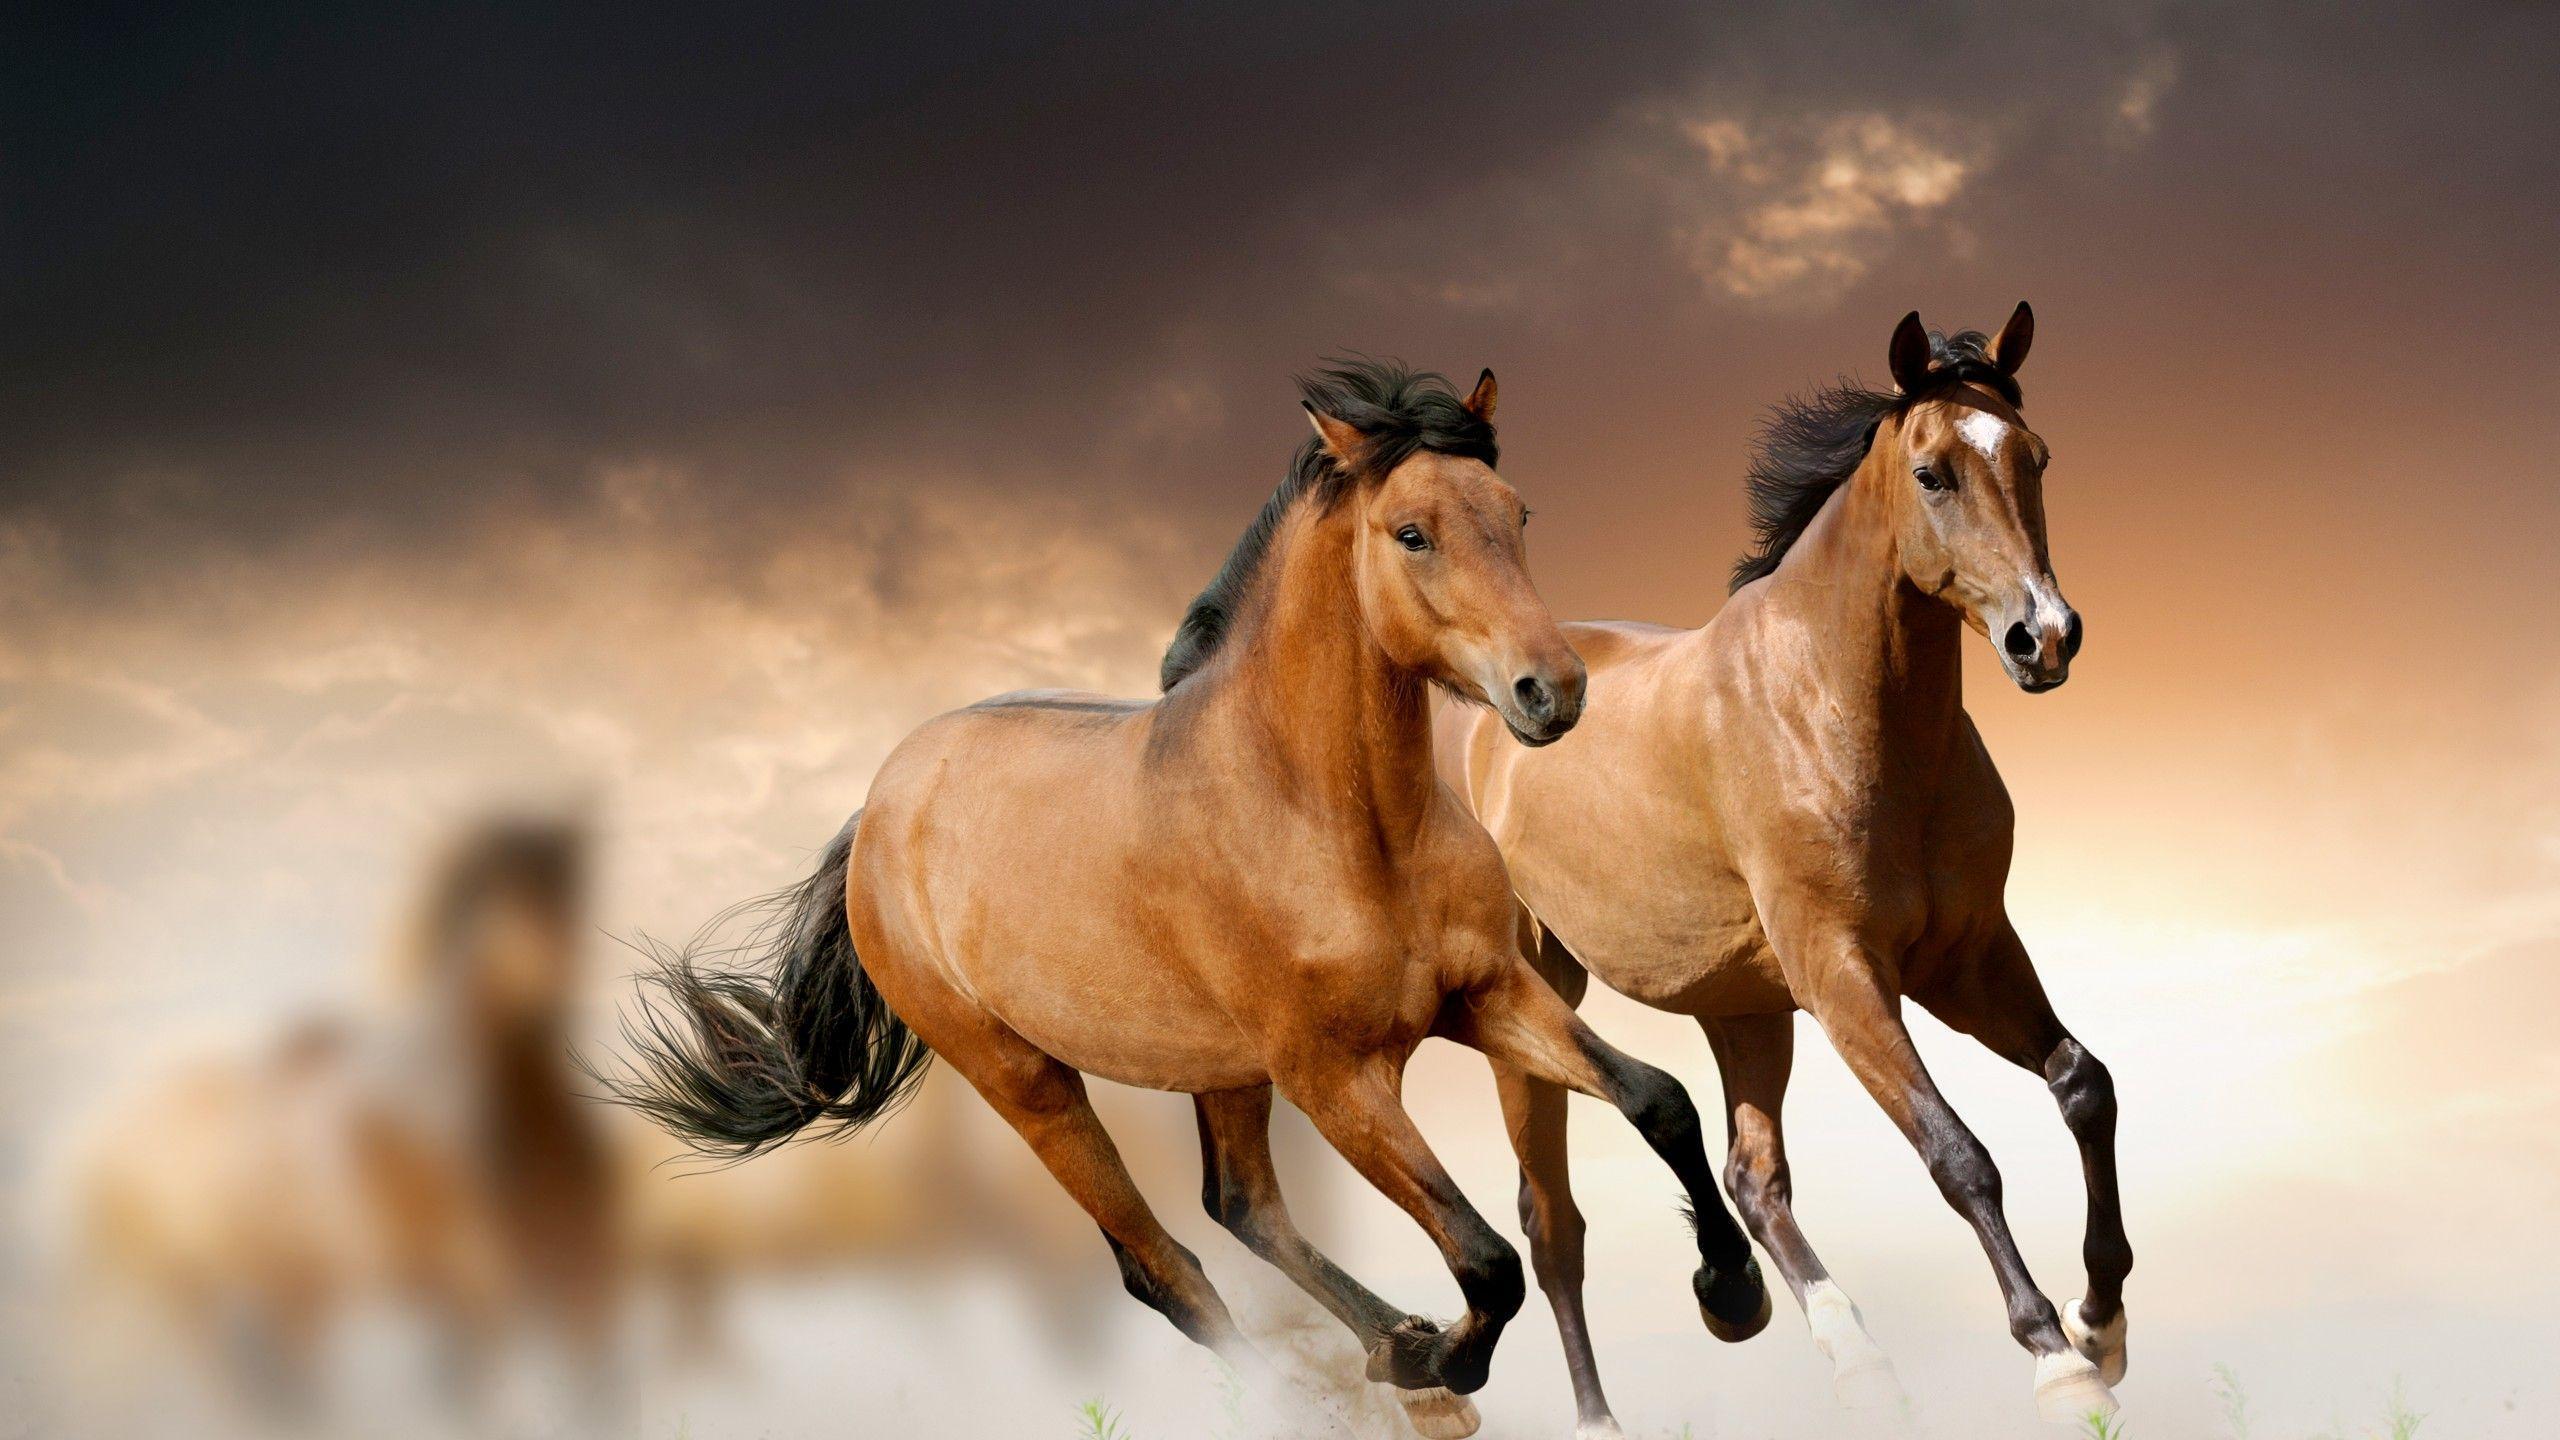 Cool Running Golden Horse. Animal Wallpaper HD. Widescreen